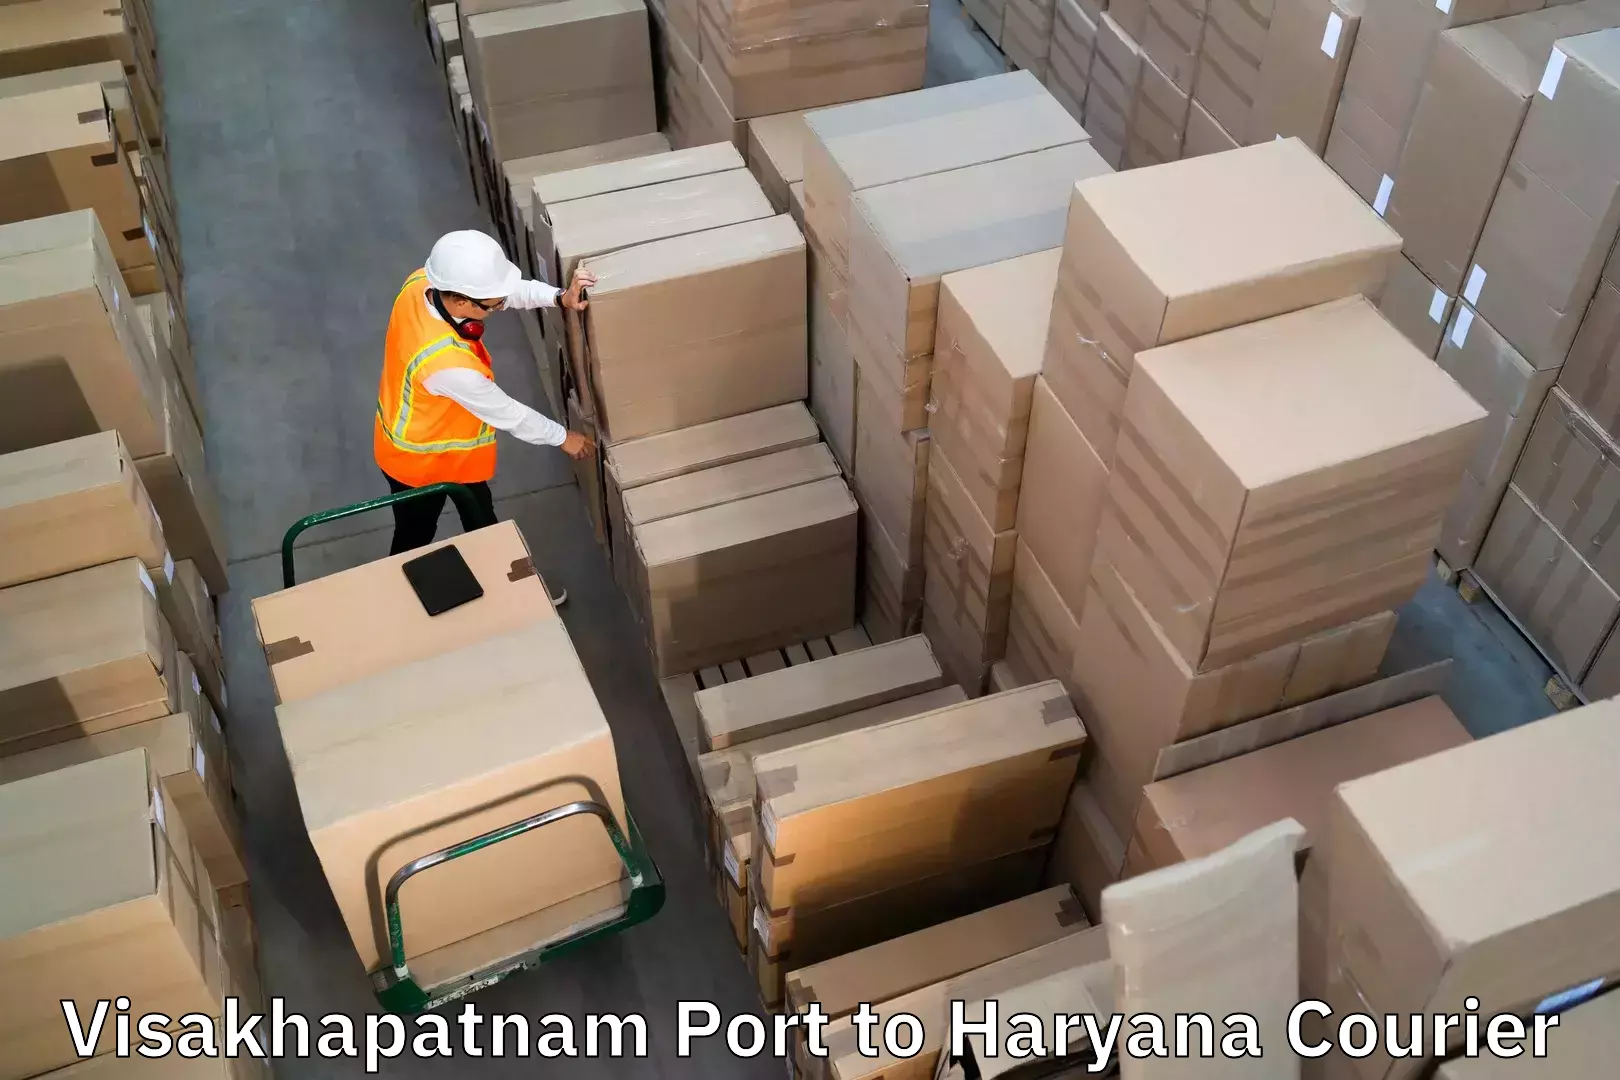 Baggage transport scheduler Visakhapatnam Port to Chirya